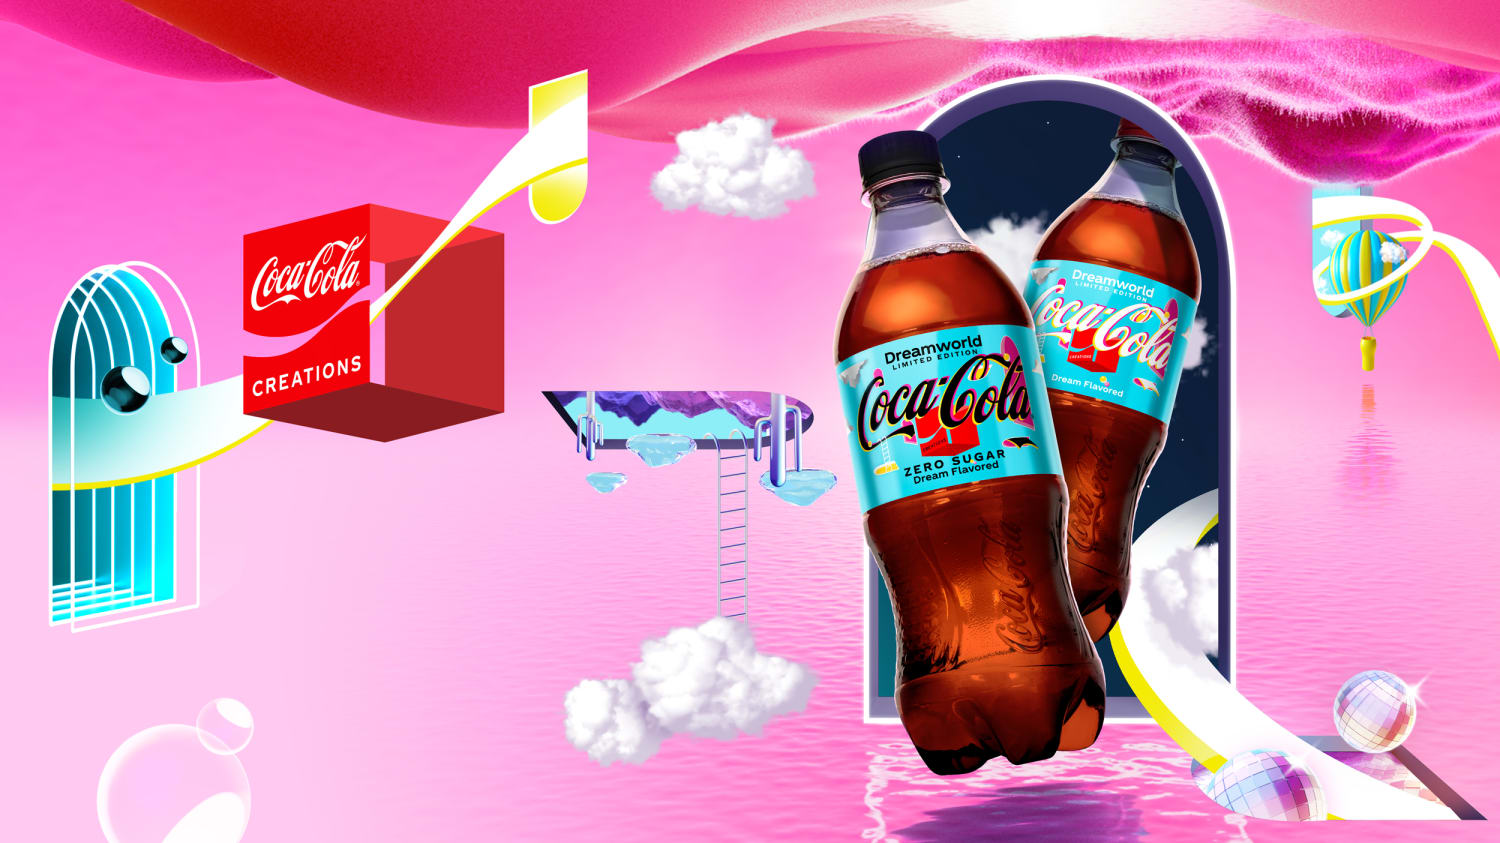 Coca-Cola® Dreamworld